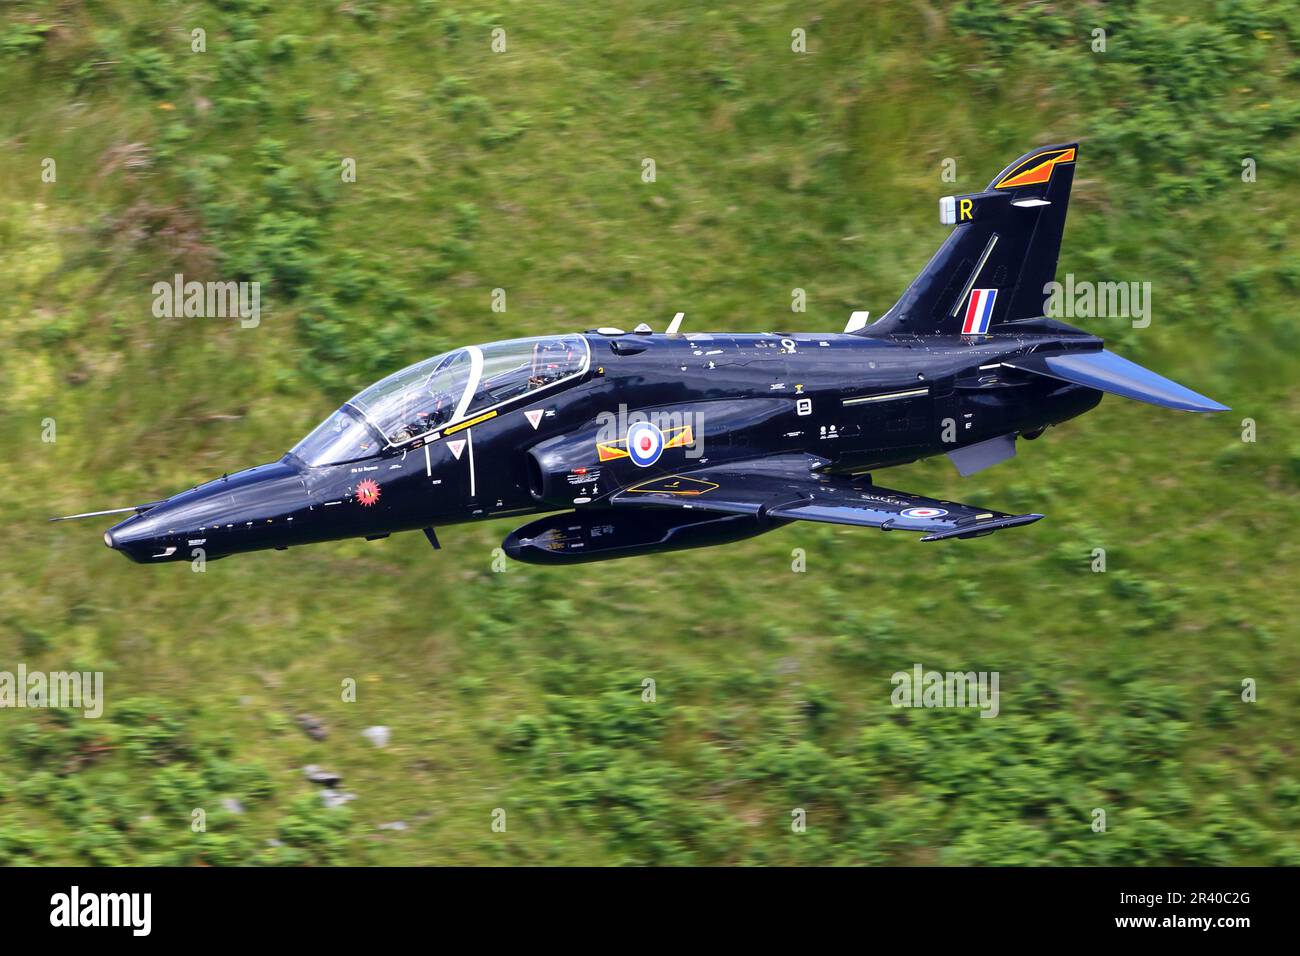 A Hawk T2 de la Royal Air Force pendant le vol d'entraînement dans la boucle de Machynlleth, pays de Galles, Royaume-Uni. Banque D'Images